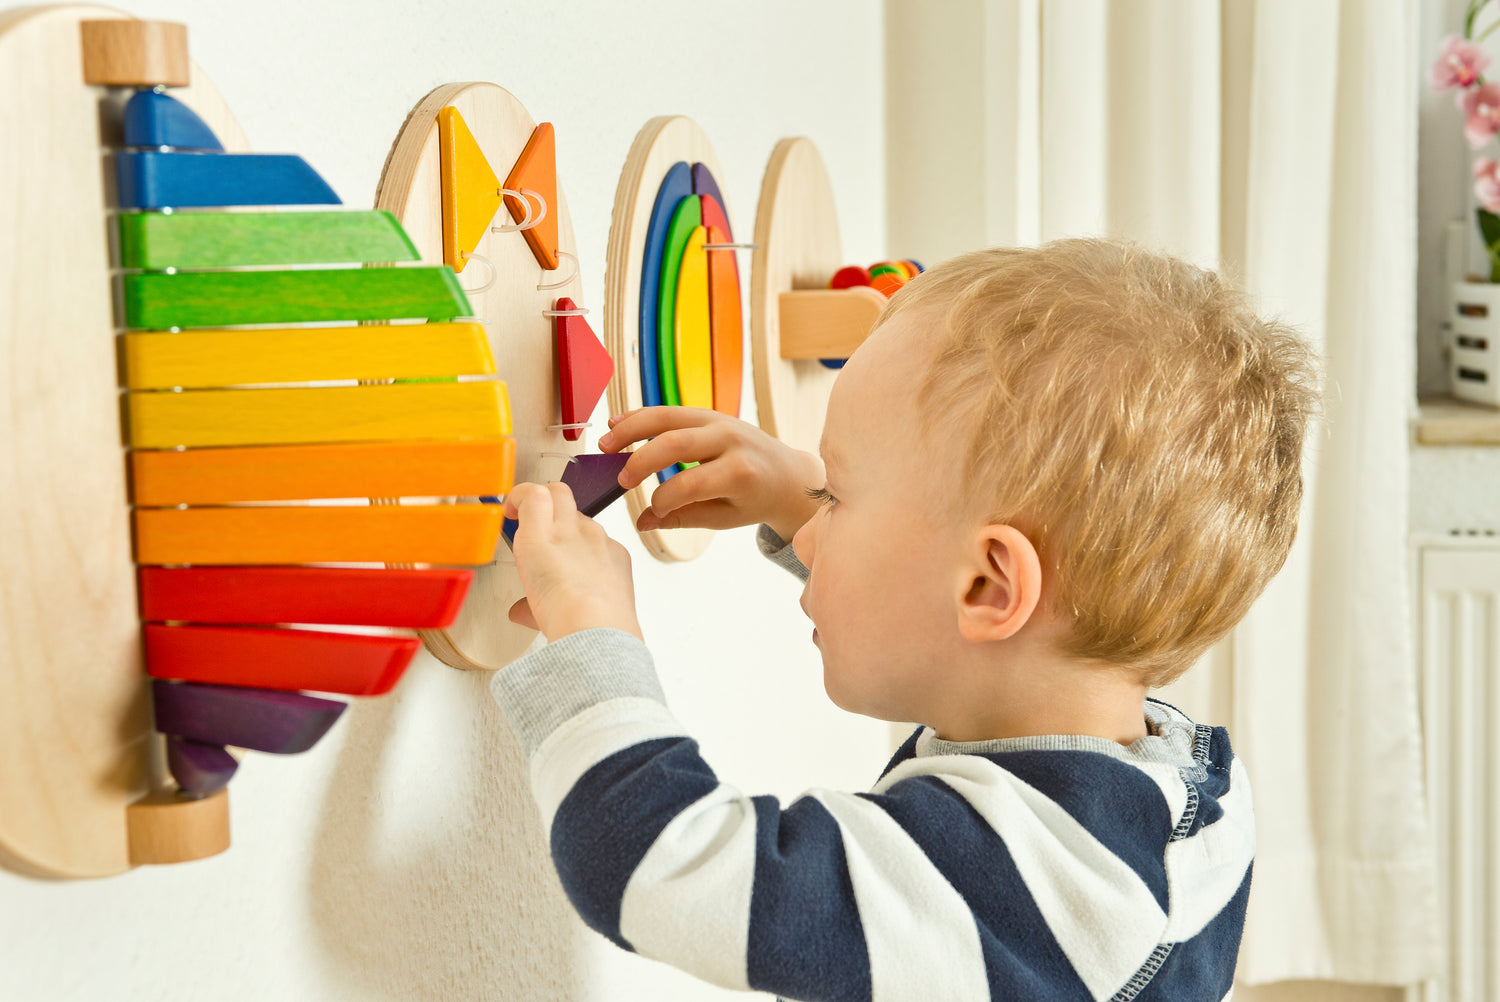 FRIDLIN Holzspielzeug, perfekte Wandspiele für Kleinkindförderung, lassen Kinderzimmer und Warteräume bunt und fröhlich erscheinen.